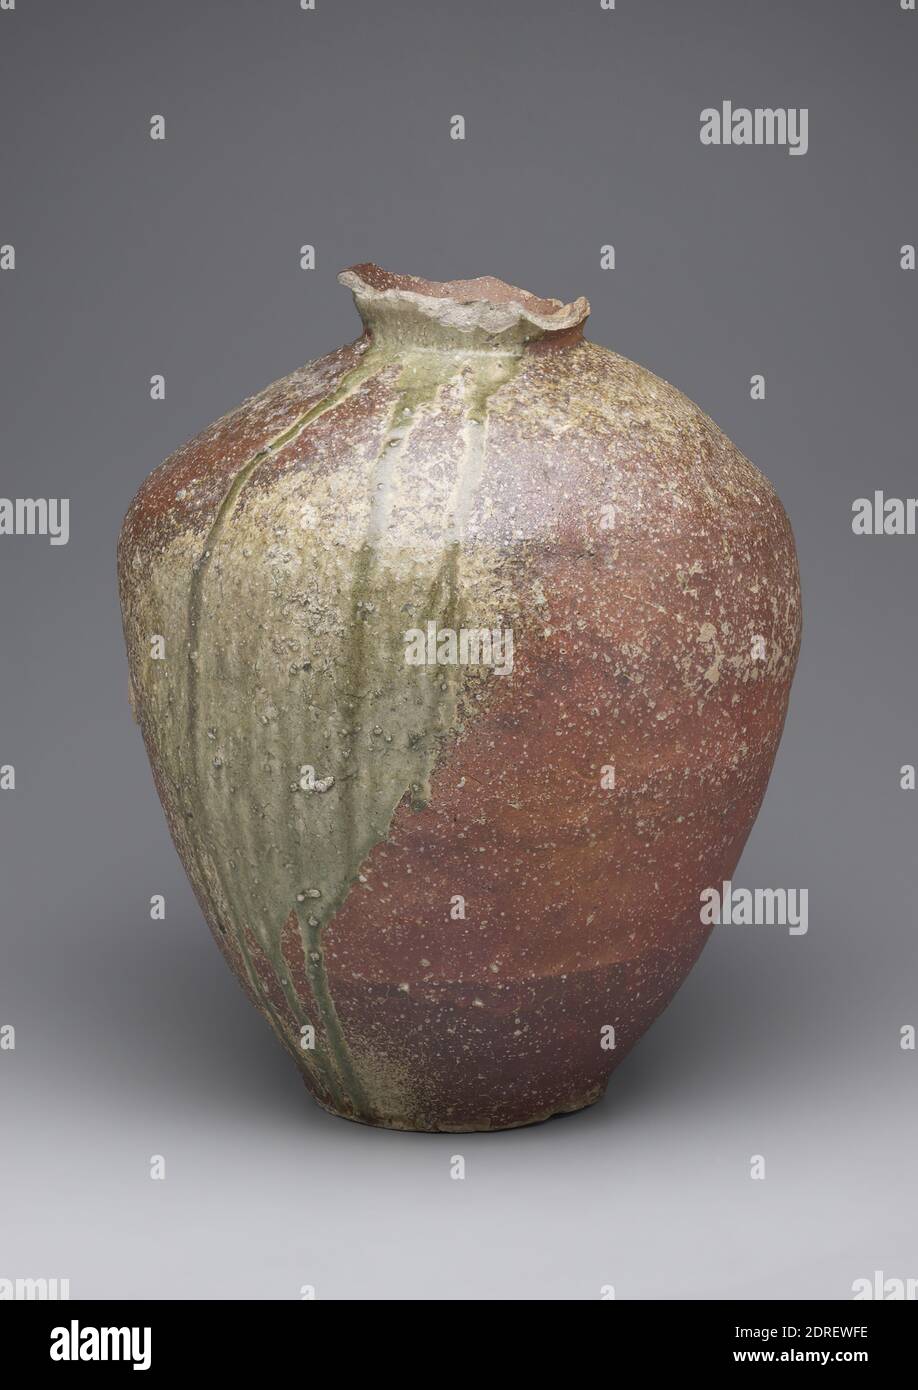 Vasetto, 15 ° secolo, gres con glassa di cenere naturale (Shigaraki ware), 21 7/16 poll. (54.5 cm), questo grande vasetto di stoccaggio della Valle di Shigaraki, a sud-est di Kyoto, incarna un'estetica integrale alla ceramica giapponese. Il vaso, realizzato a spirale in sezioni, dimostra il classico carattere Shigaraki, che è definito da una superficie ruvida e ruggine-arancio combinato con uno smalto naturale di frassino verde oliva che scorre dal collo stretto e sulle spalle rigonfianti al piede. L'alto contenuto di ferro dell'argilla conferisce al corpo la sua tonalità rossastra Foto Stock